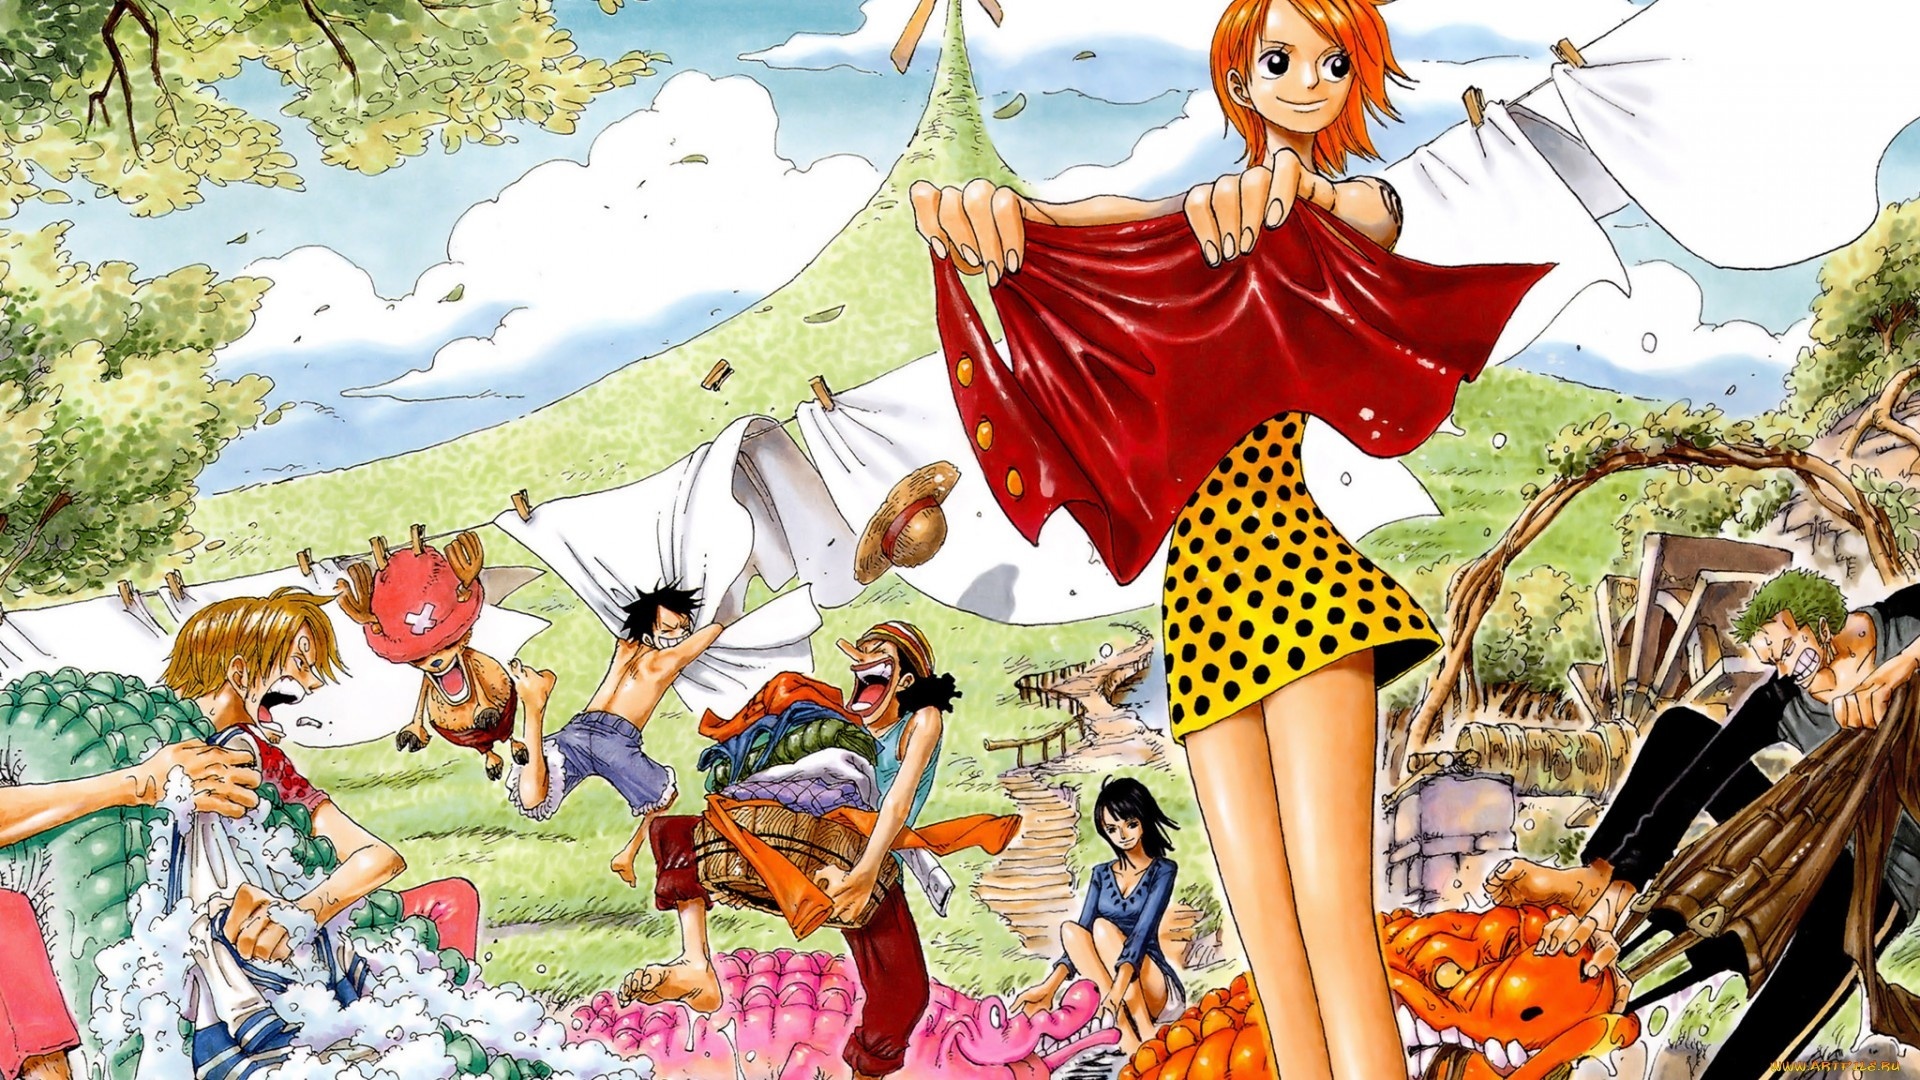 Bạn đam mê One Piece và mong muốn tìm kiếm những bức hình nền chất lượng cao để sử dụng trang trí máy tính, điện thoại hay bất cứ thiết bị di động nào? Hãy tải xuống ngay bộ sưu tập hình nền One Piece HD của chúng tôi. Với chất lượng ảnh tuyệt đẹp và độ phân giải cao, chắc chắn bạn sẽ được trải nghiệm một cảm giác mới lạ của nền tảng anime này.